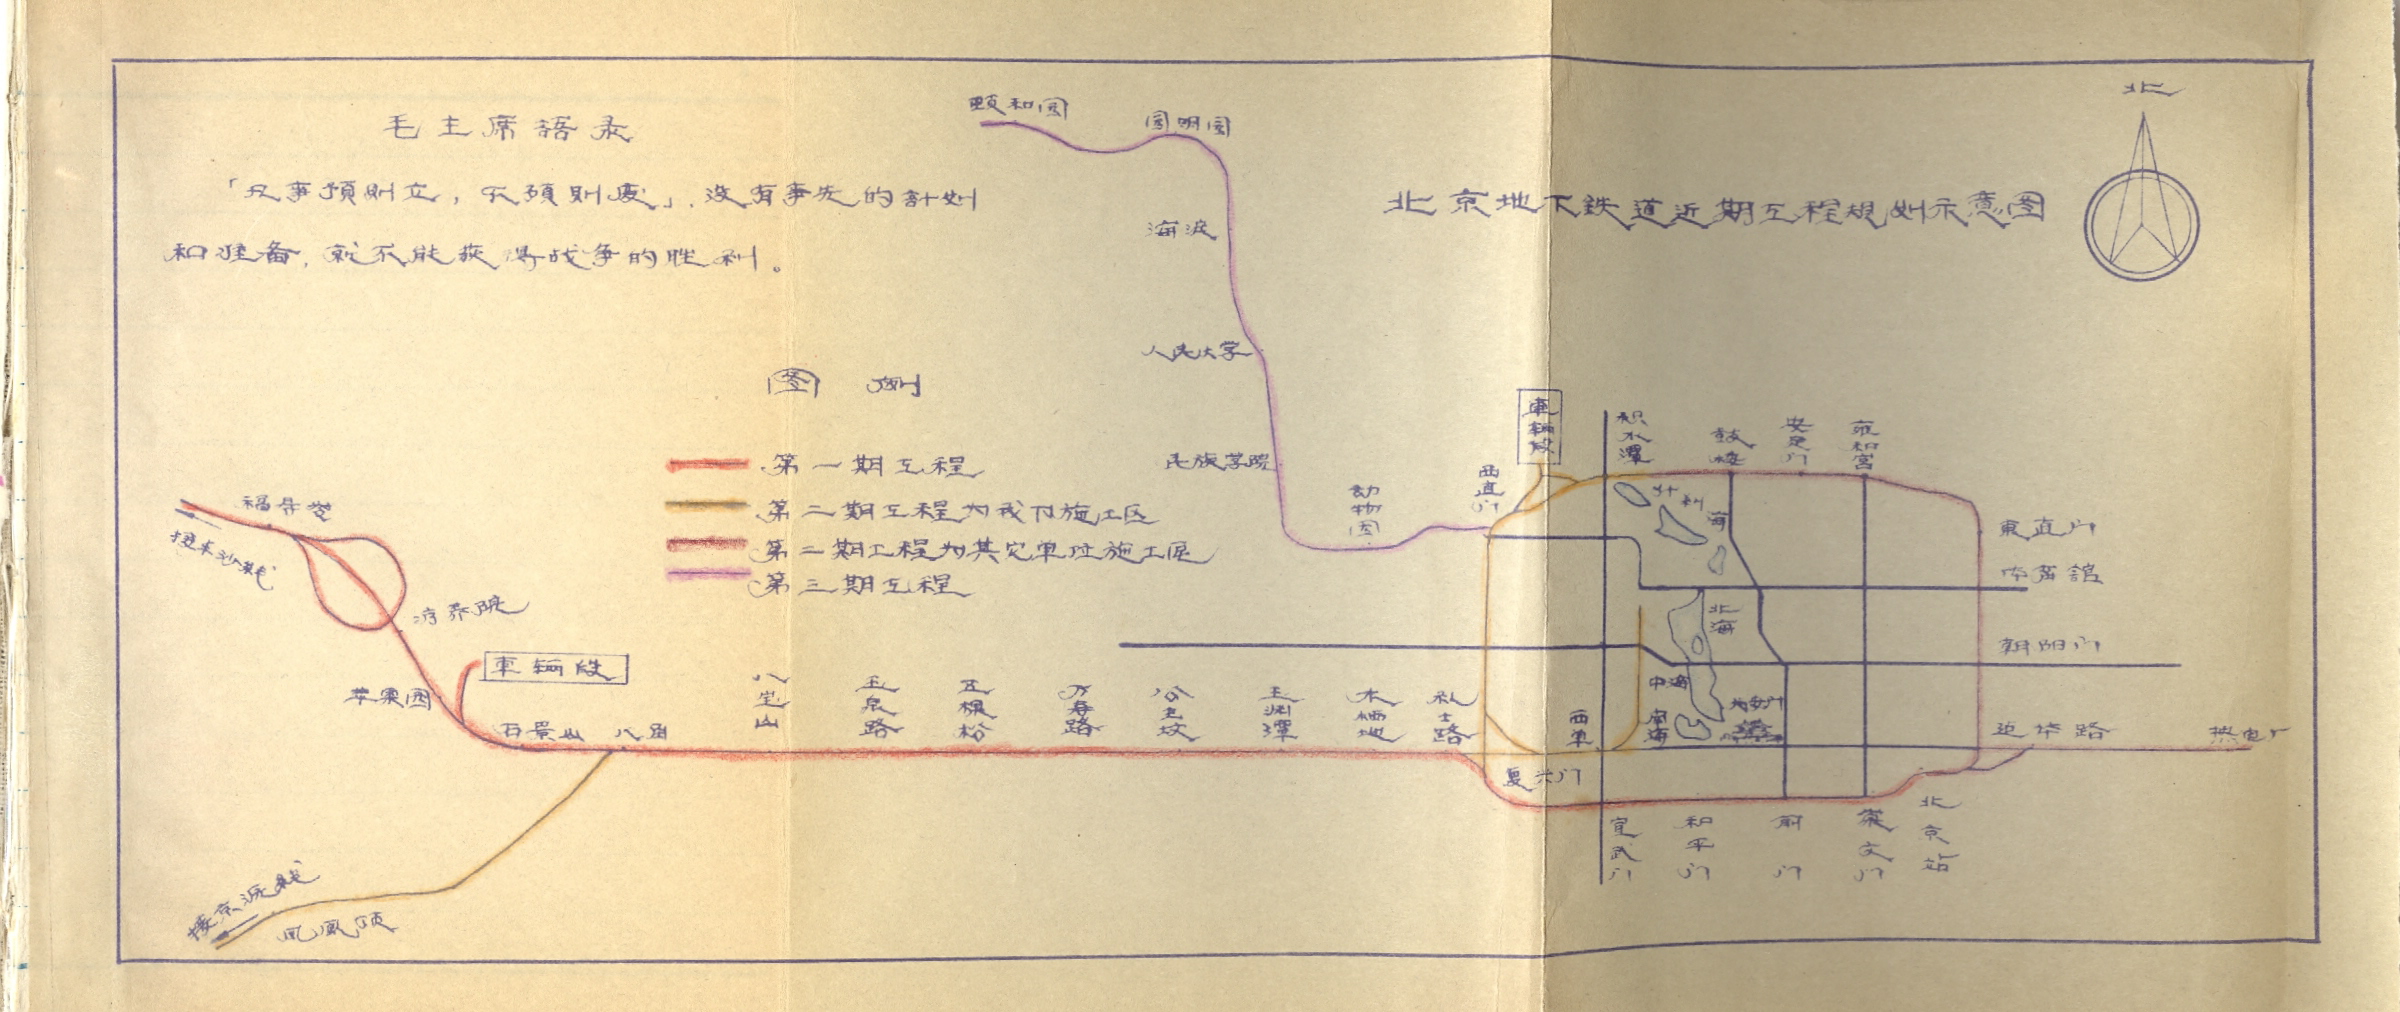 北京地下鐵道近期工程規劃示意圖，圖上的字為“福壽嶺”